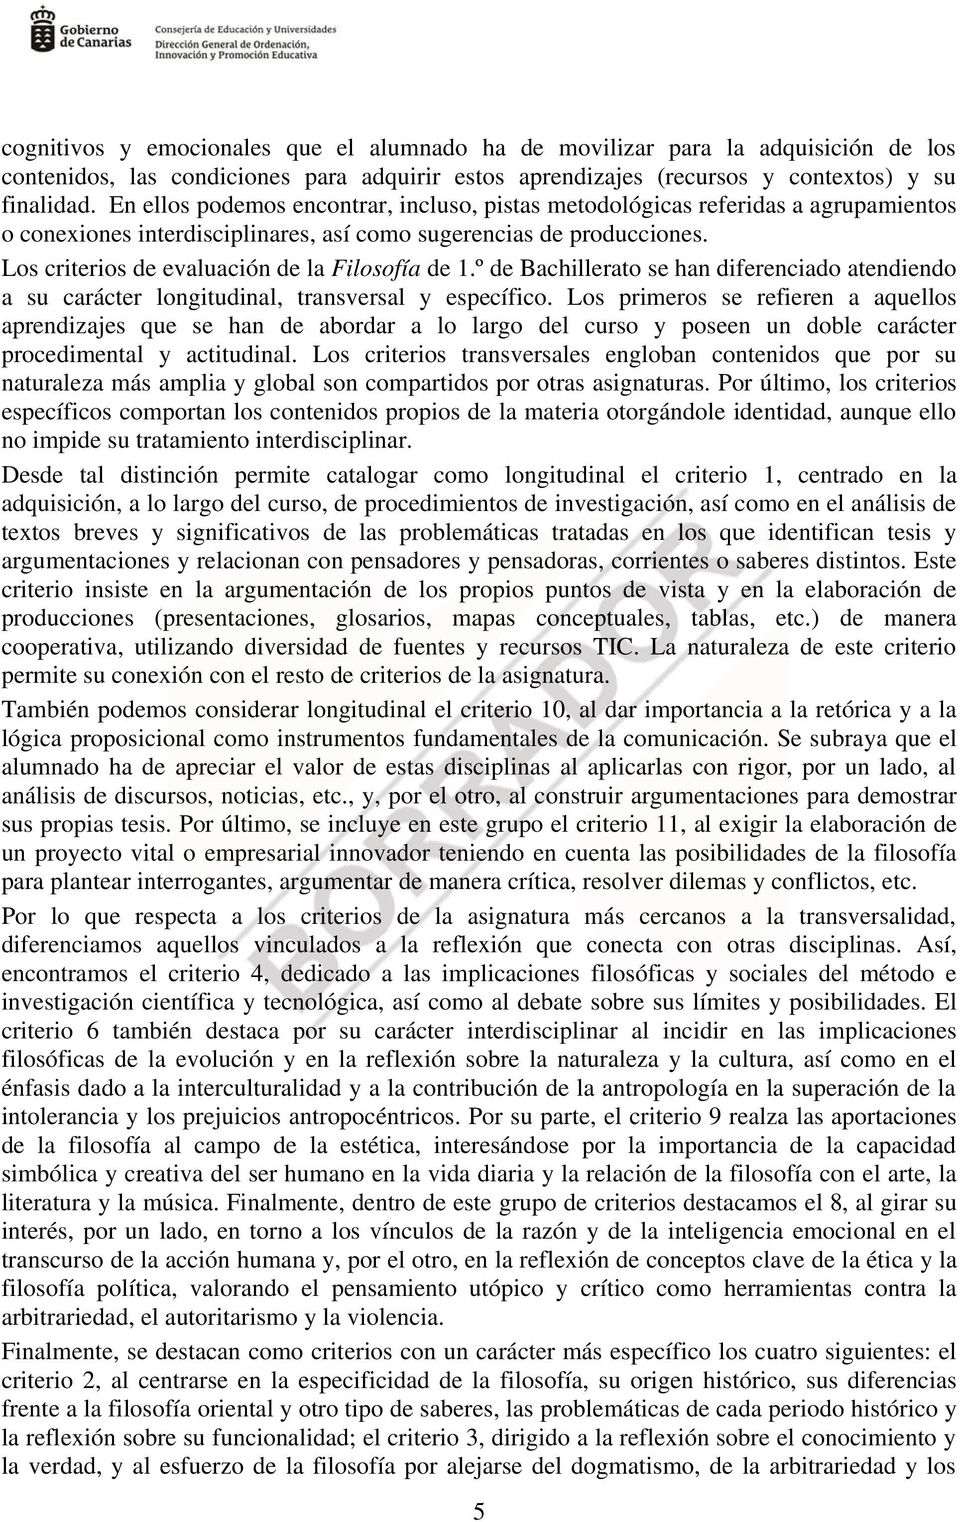 Los criterios de evaluación de la Filosofía de 1.º de Bachillerato se han diferenciado atendiendo a su carácter longitudinal, transversal y específico.